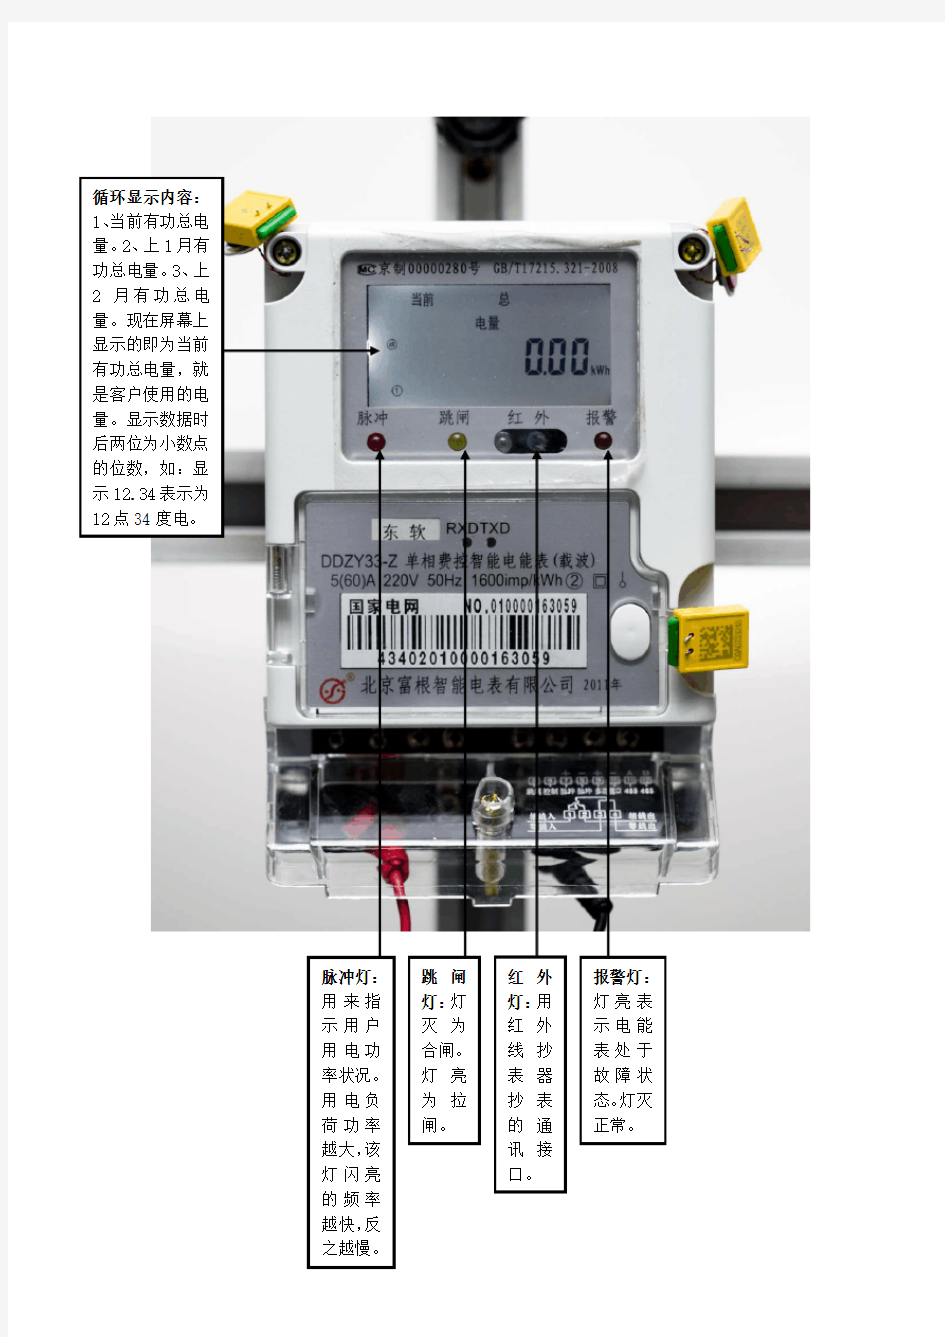 一、单相费控智能电能表的面板和液晶显示说明